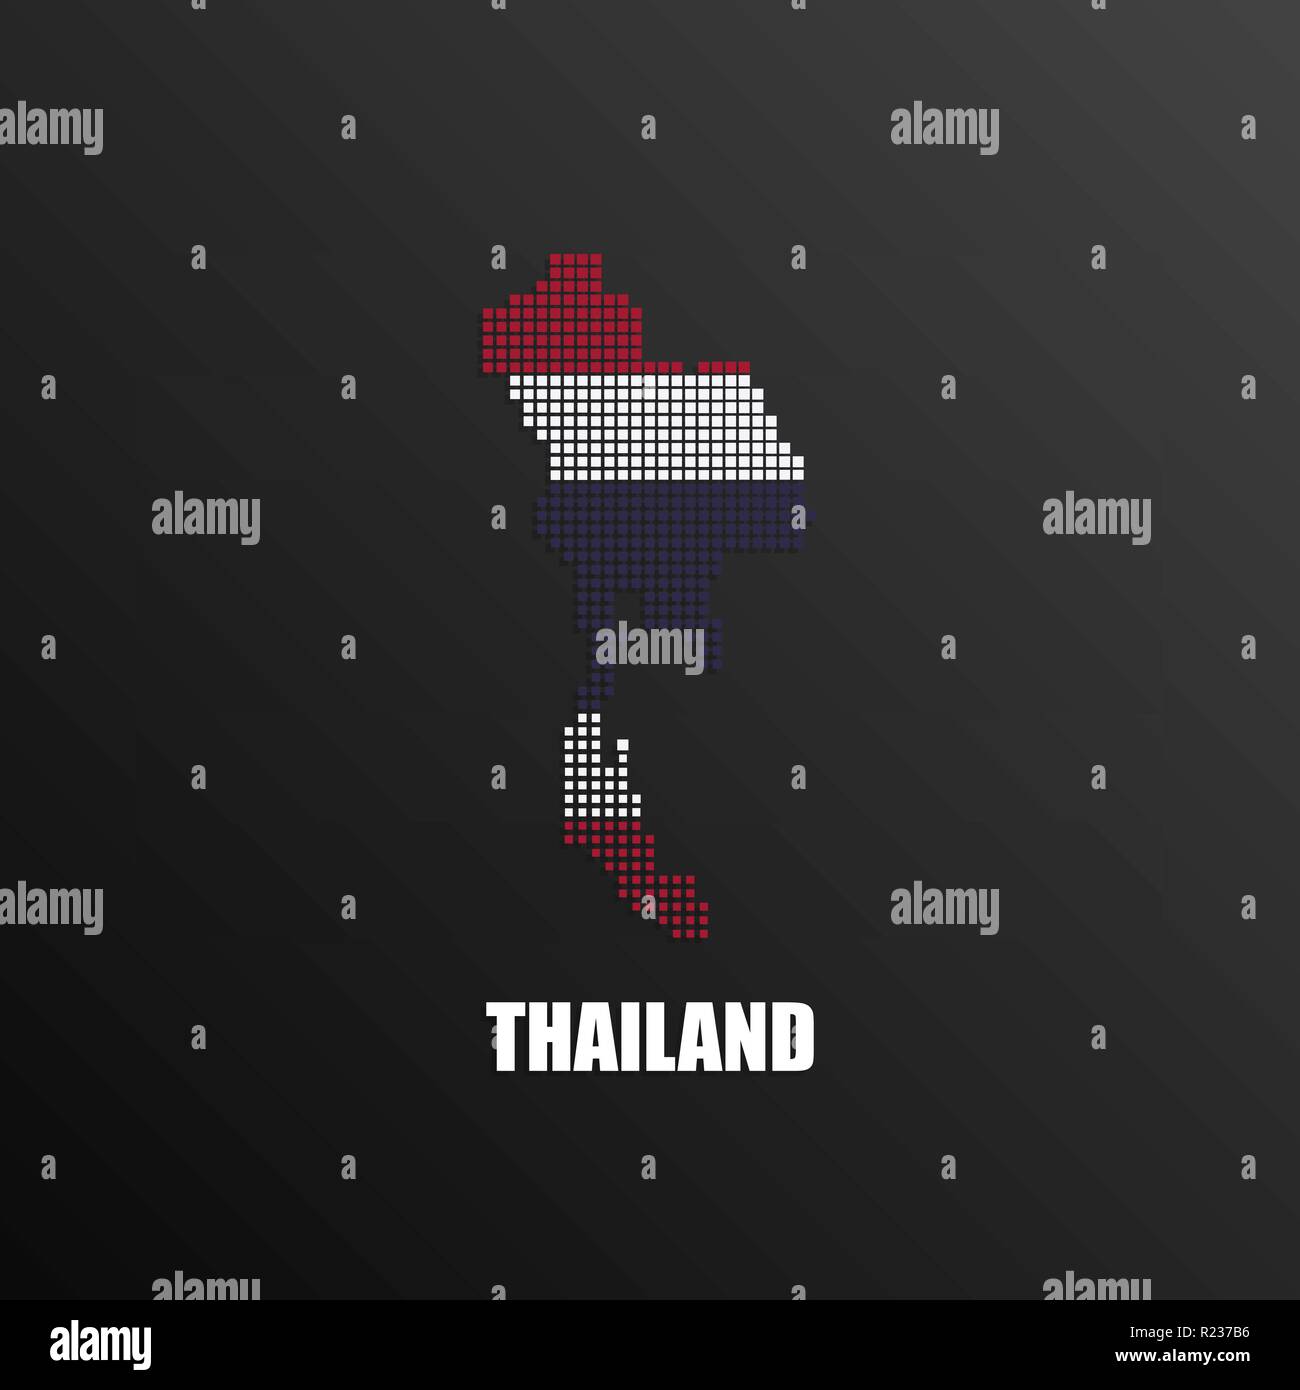 Illustration Vecteur de résumé carte demi-teinte de la Thaïlande de pixels carrés avec les couleurs du drapeau national thaïlandais de votre graphique et web design Illustration de Vecteur